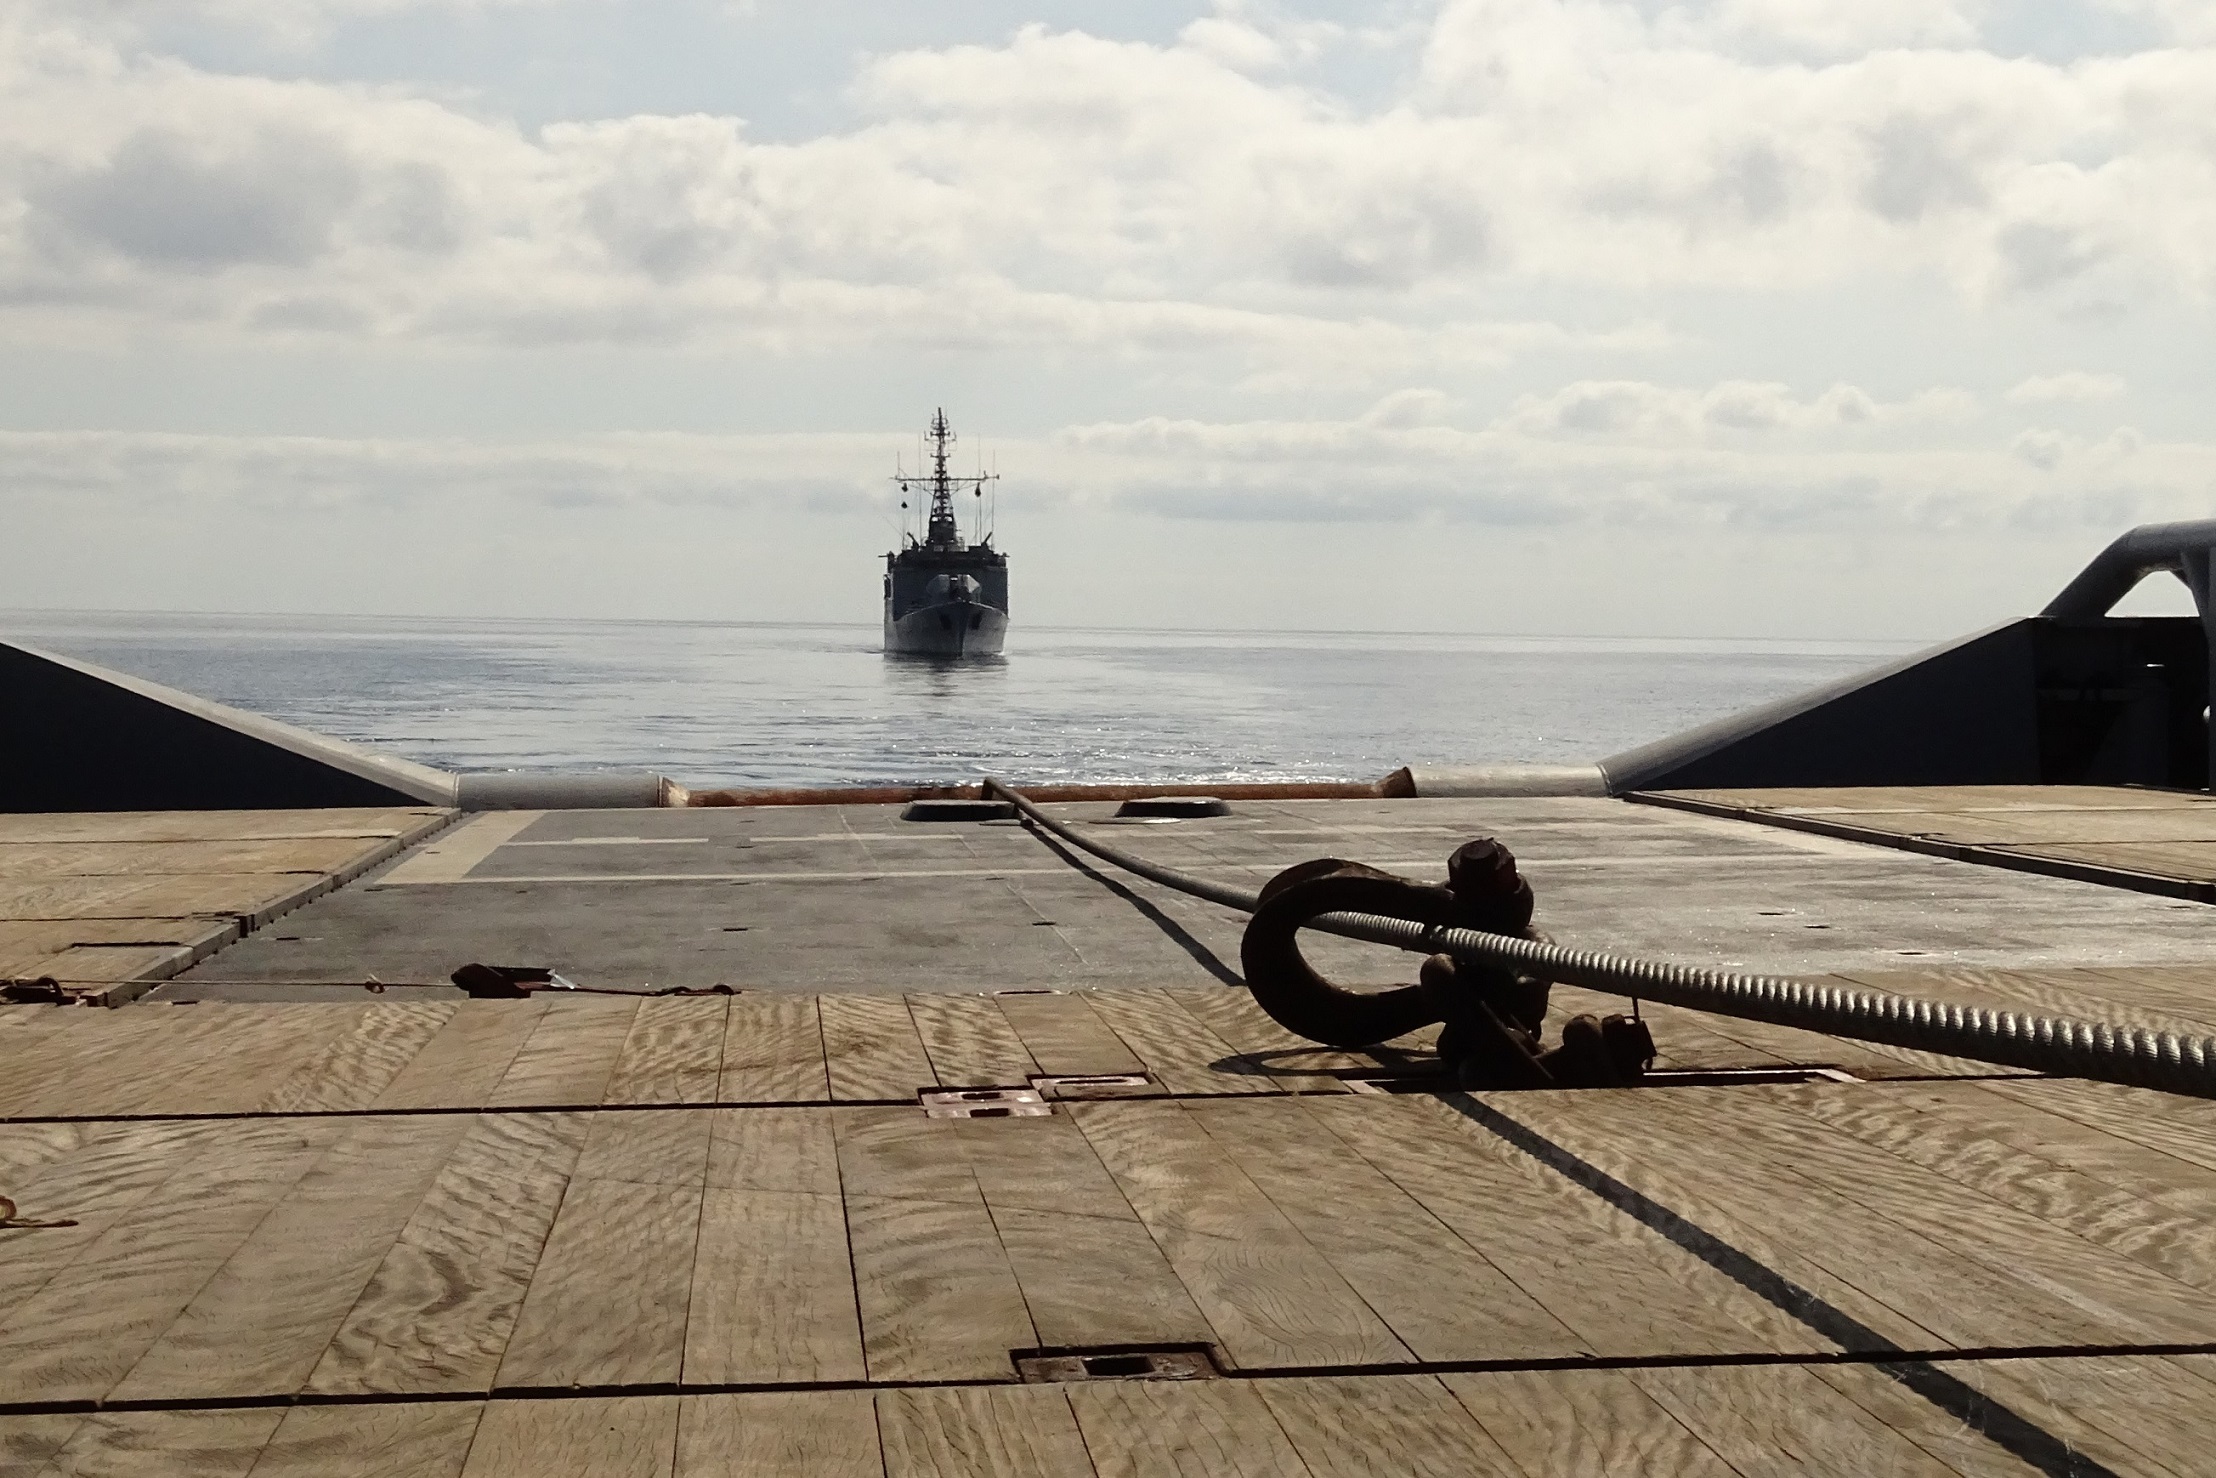 Méditerranée : Le BSAM Loire opère dans le cadre de l’action de l’état en mer